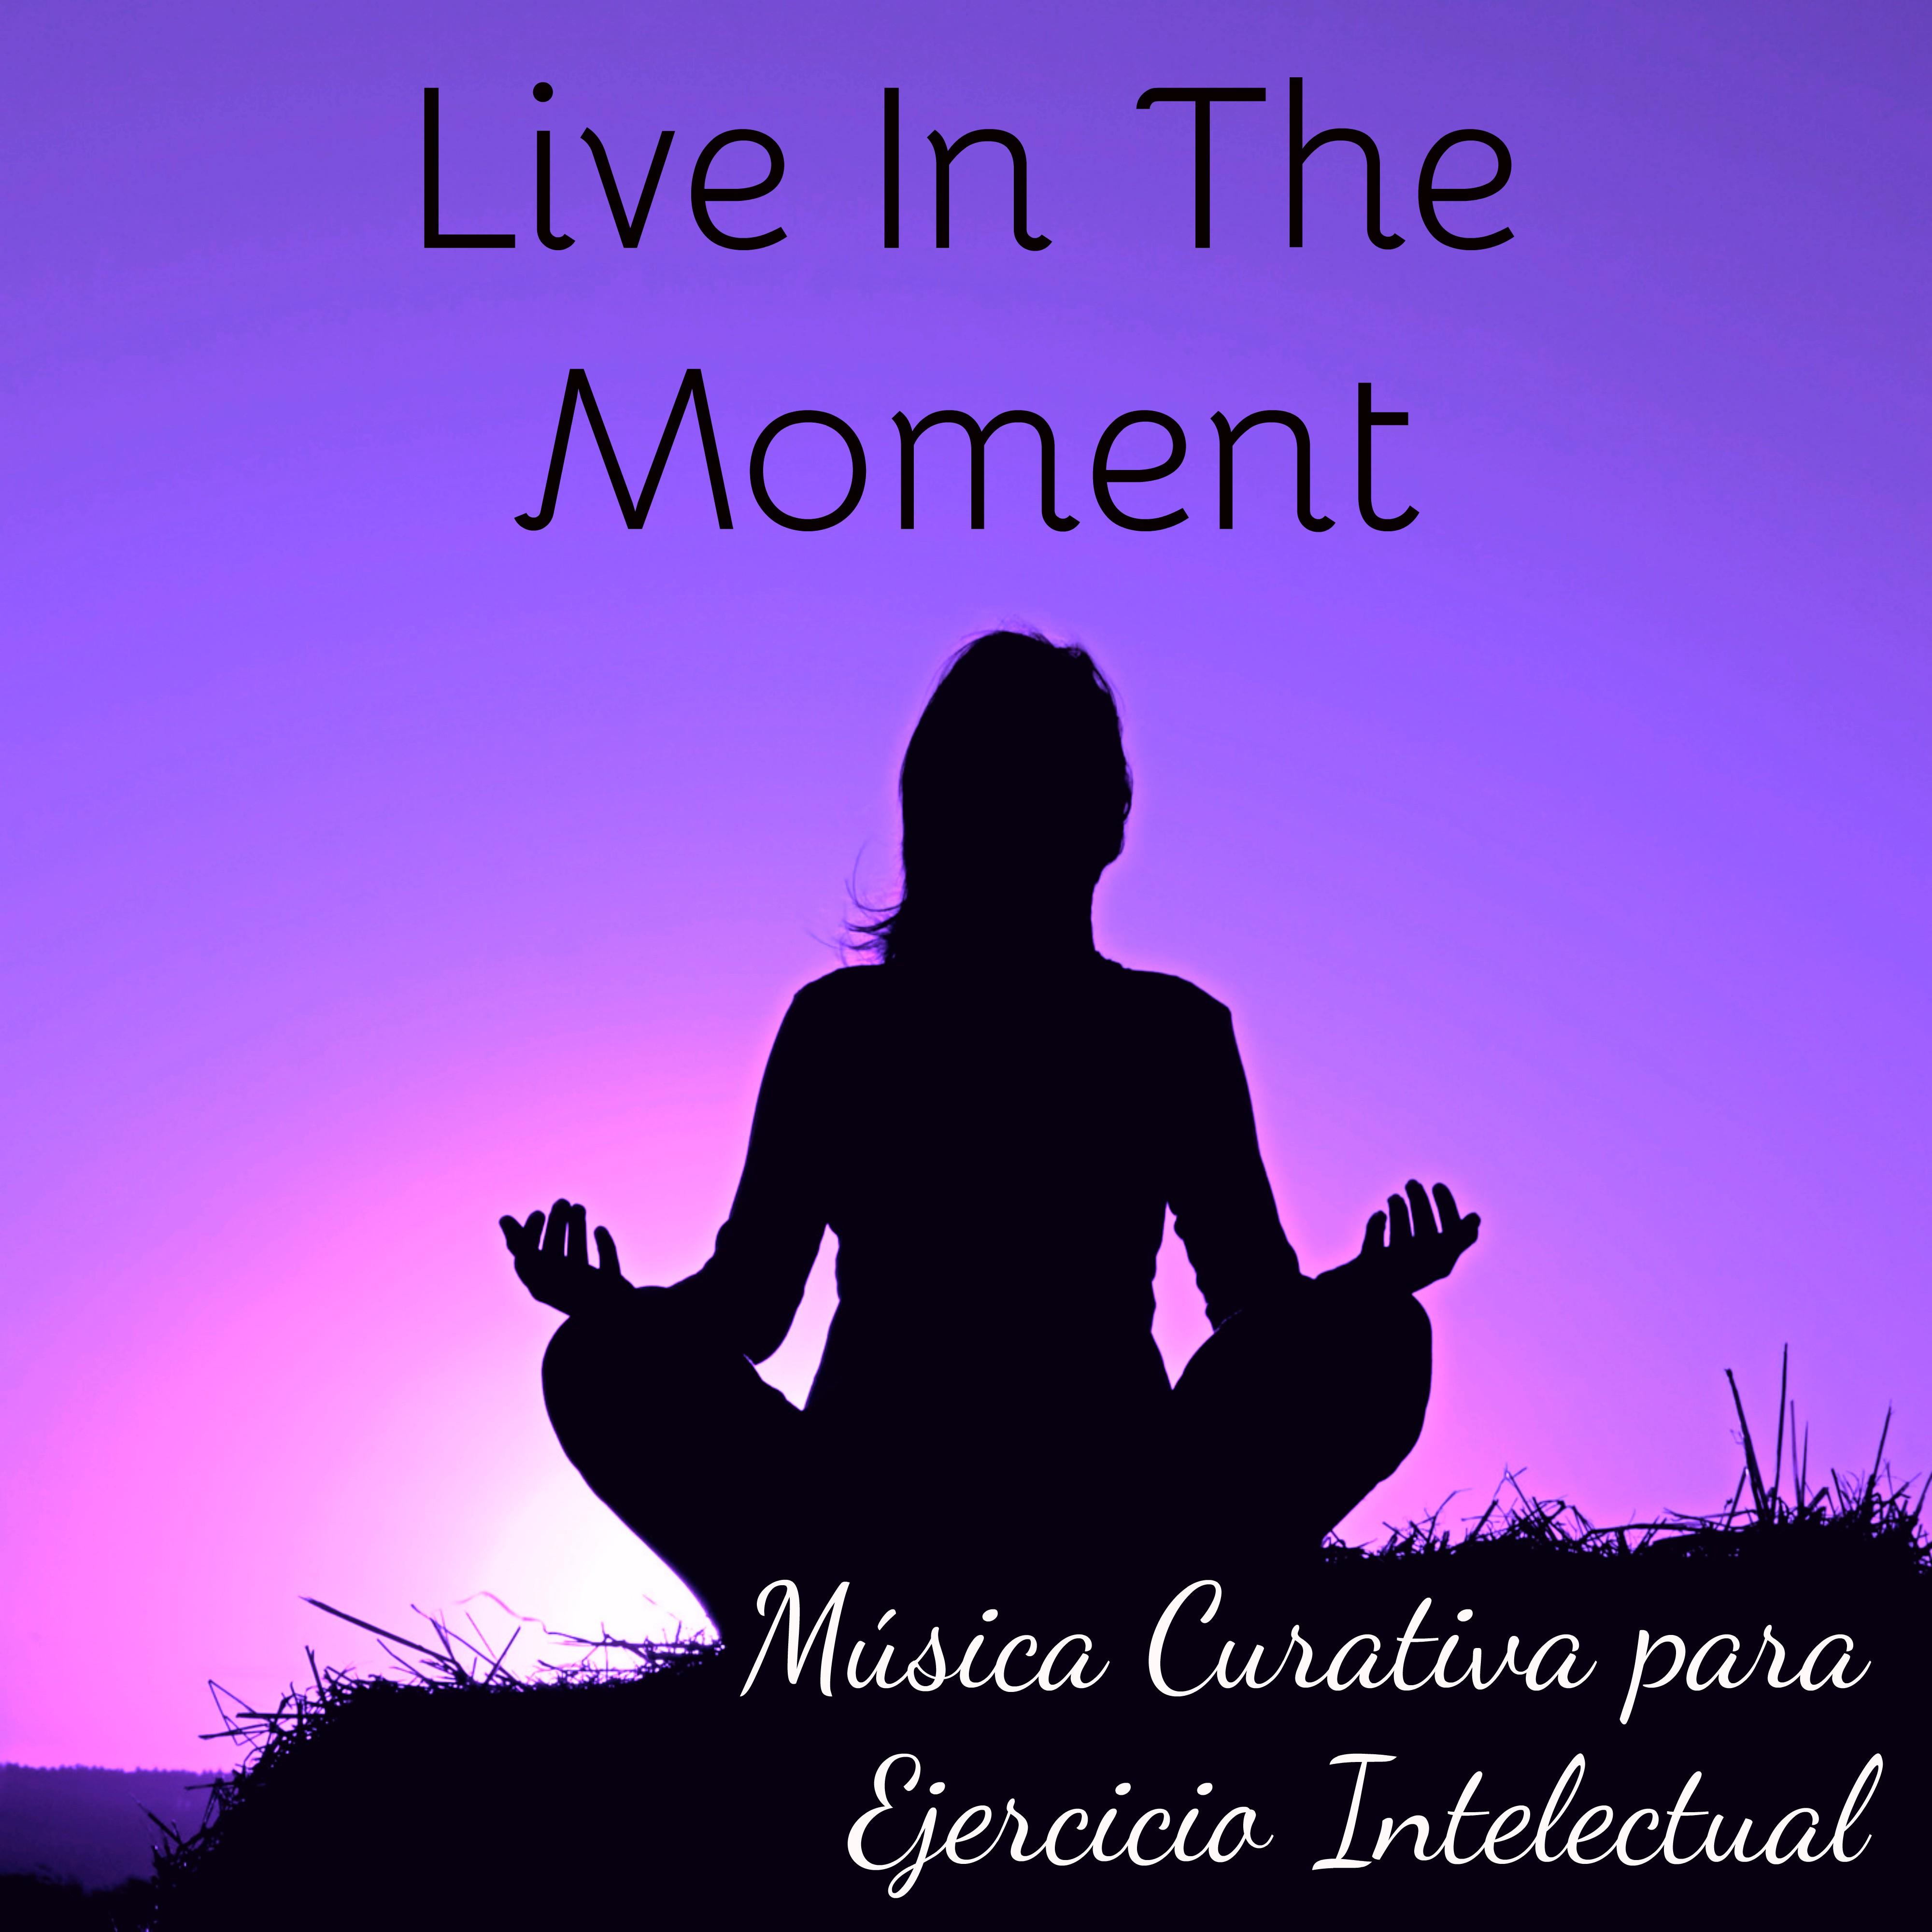 Live In The Moment  Mu sica Curativa para Ejercicio Intelectual Terapia de Sonido y Sanar El Alma